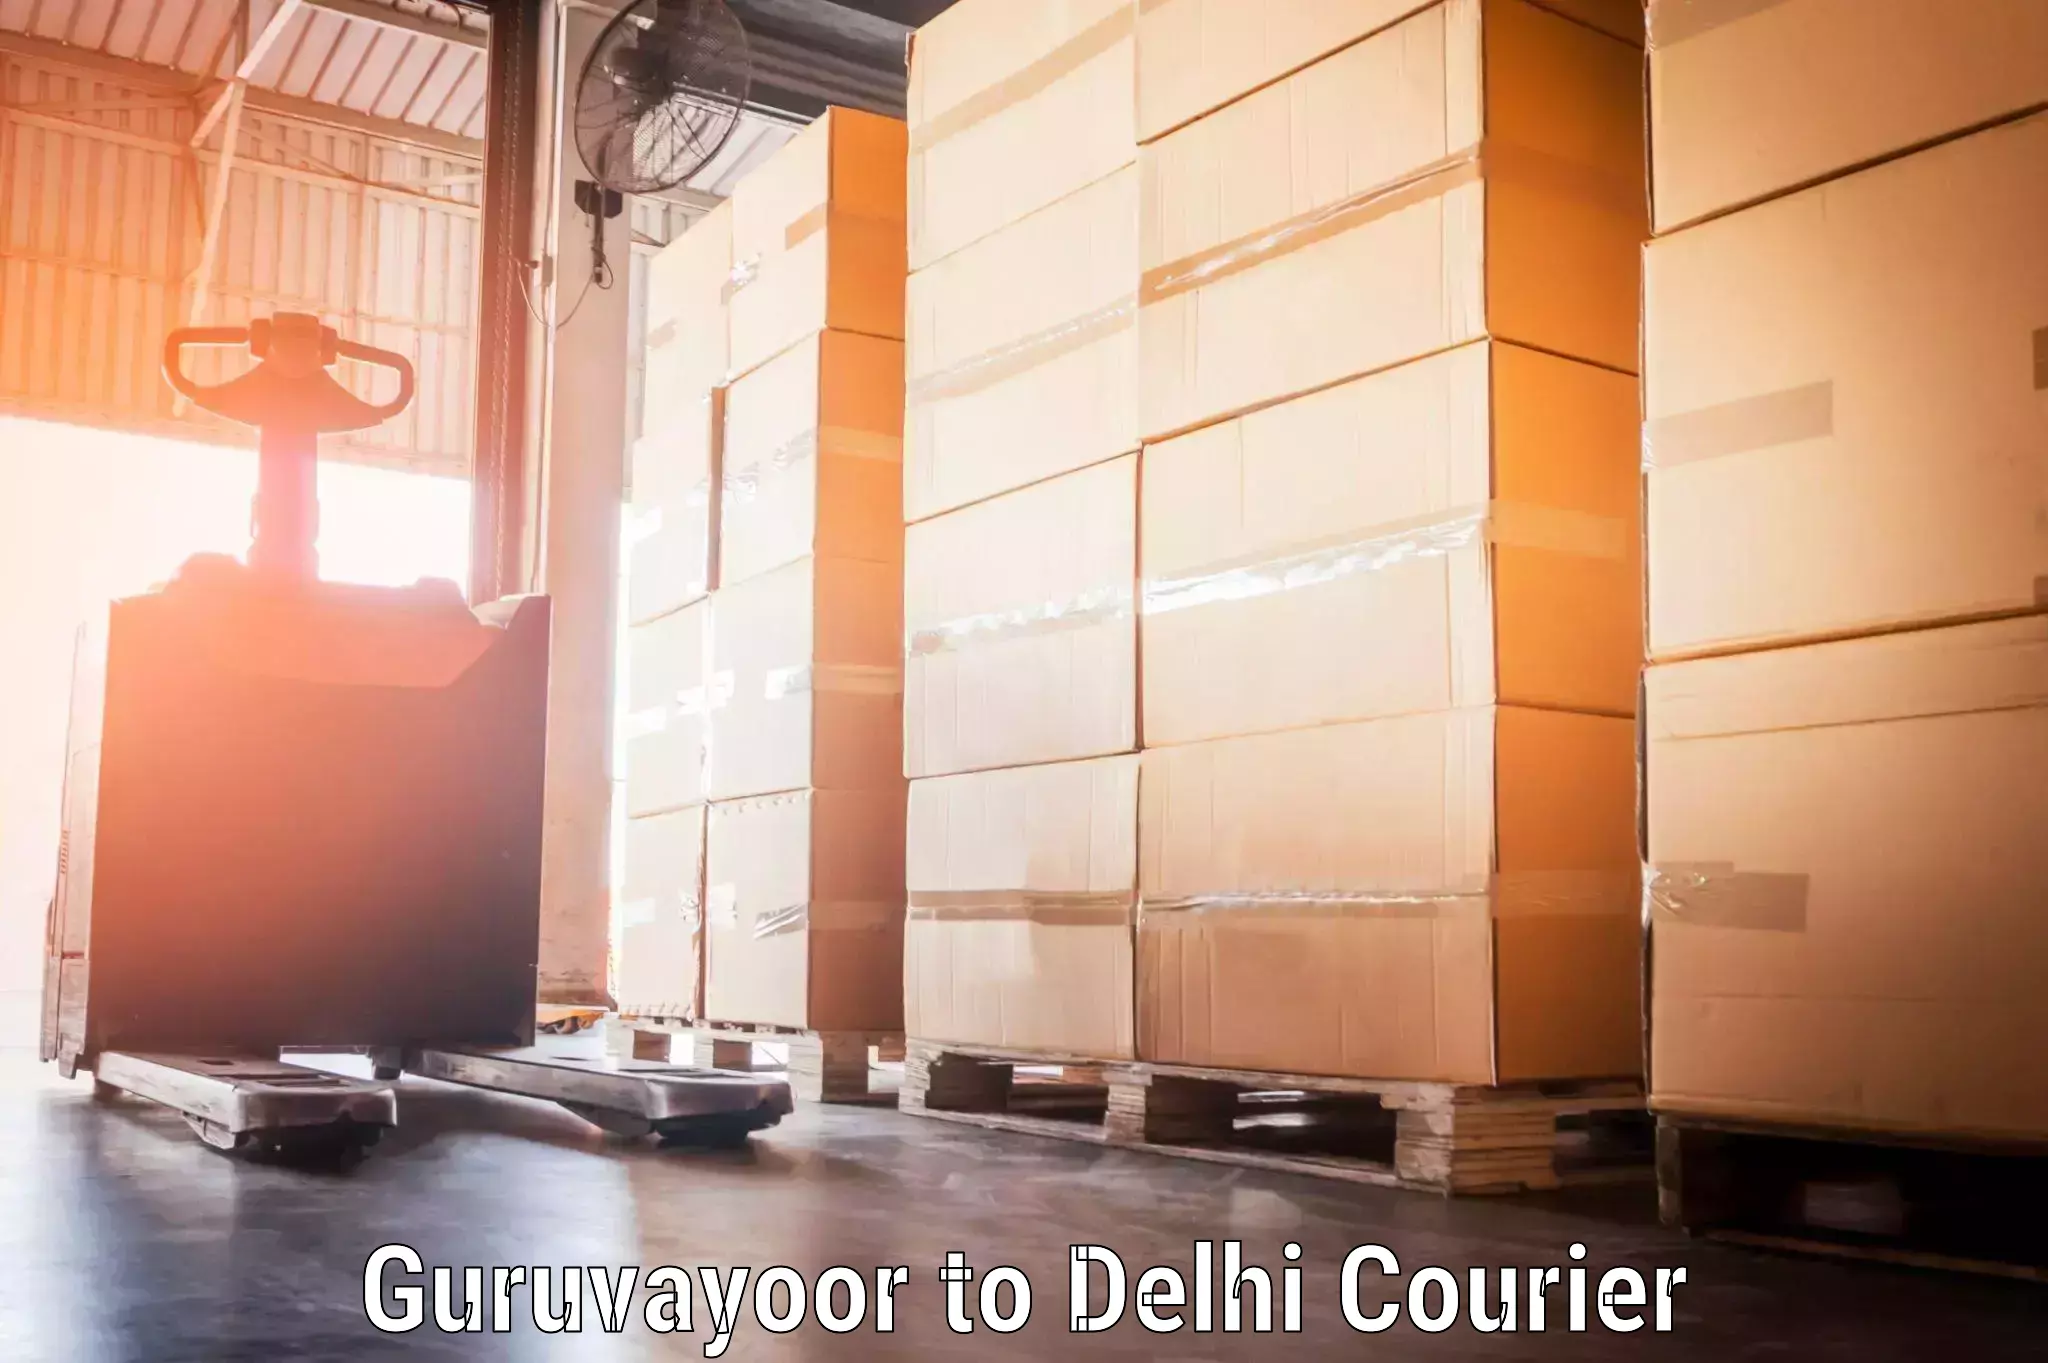 Door-to-door baggage service Guruvayoor to IIT Delhi